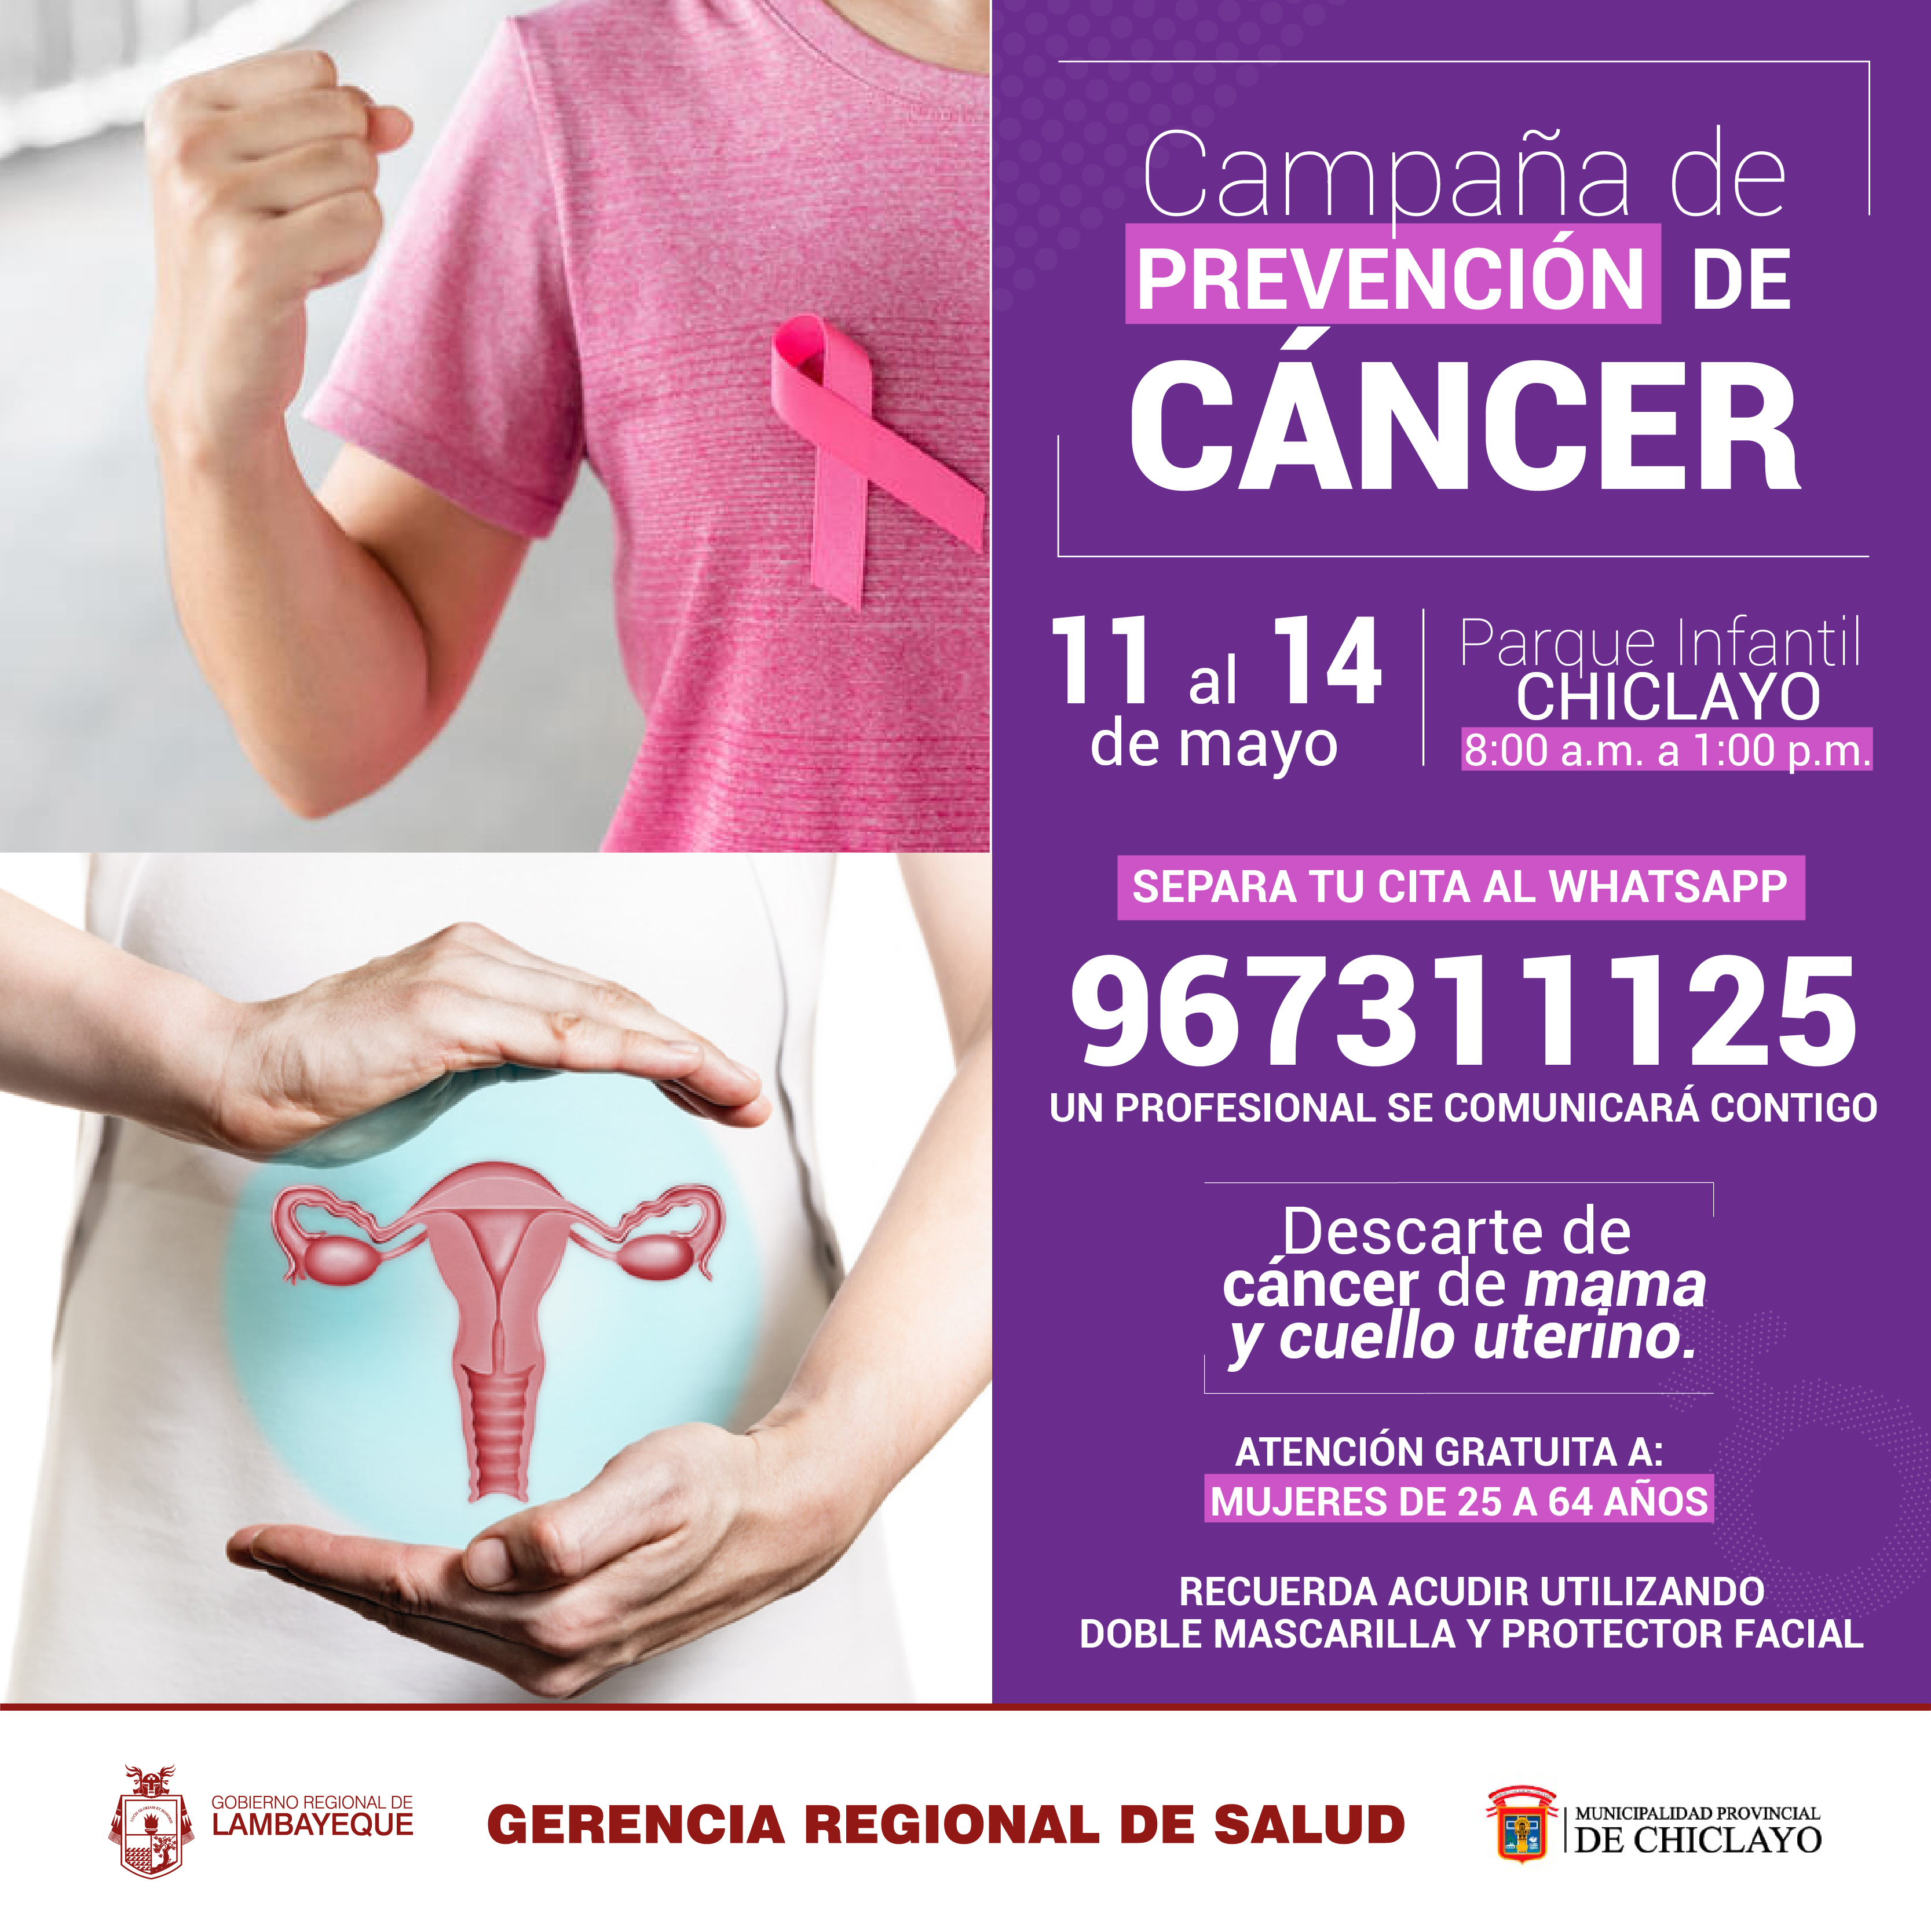 Gerencia Regional de Salud Lambayeque on Twitter: 